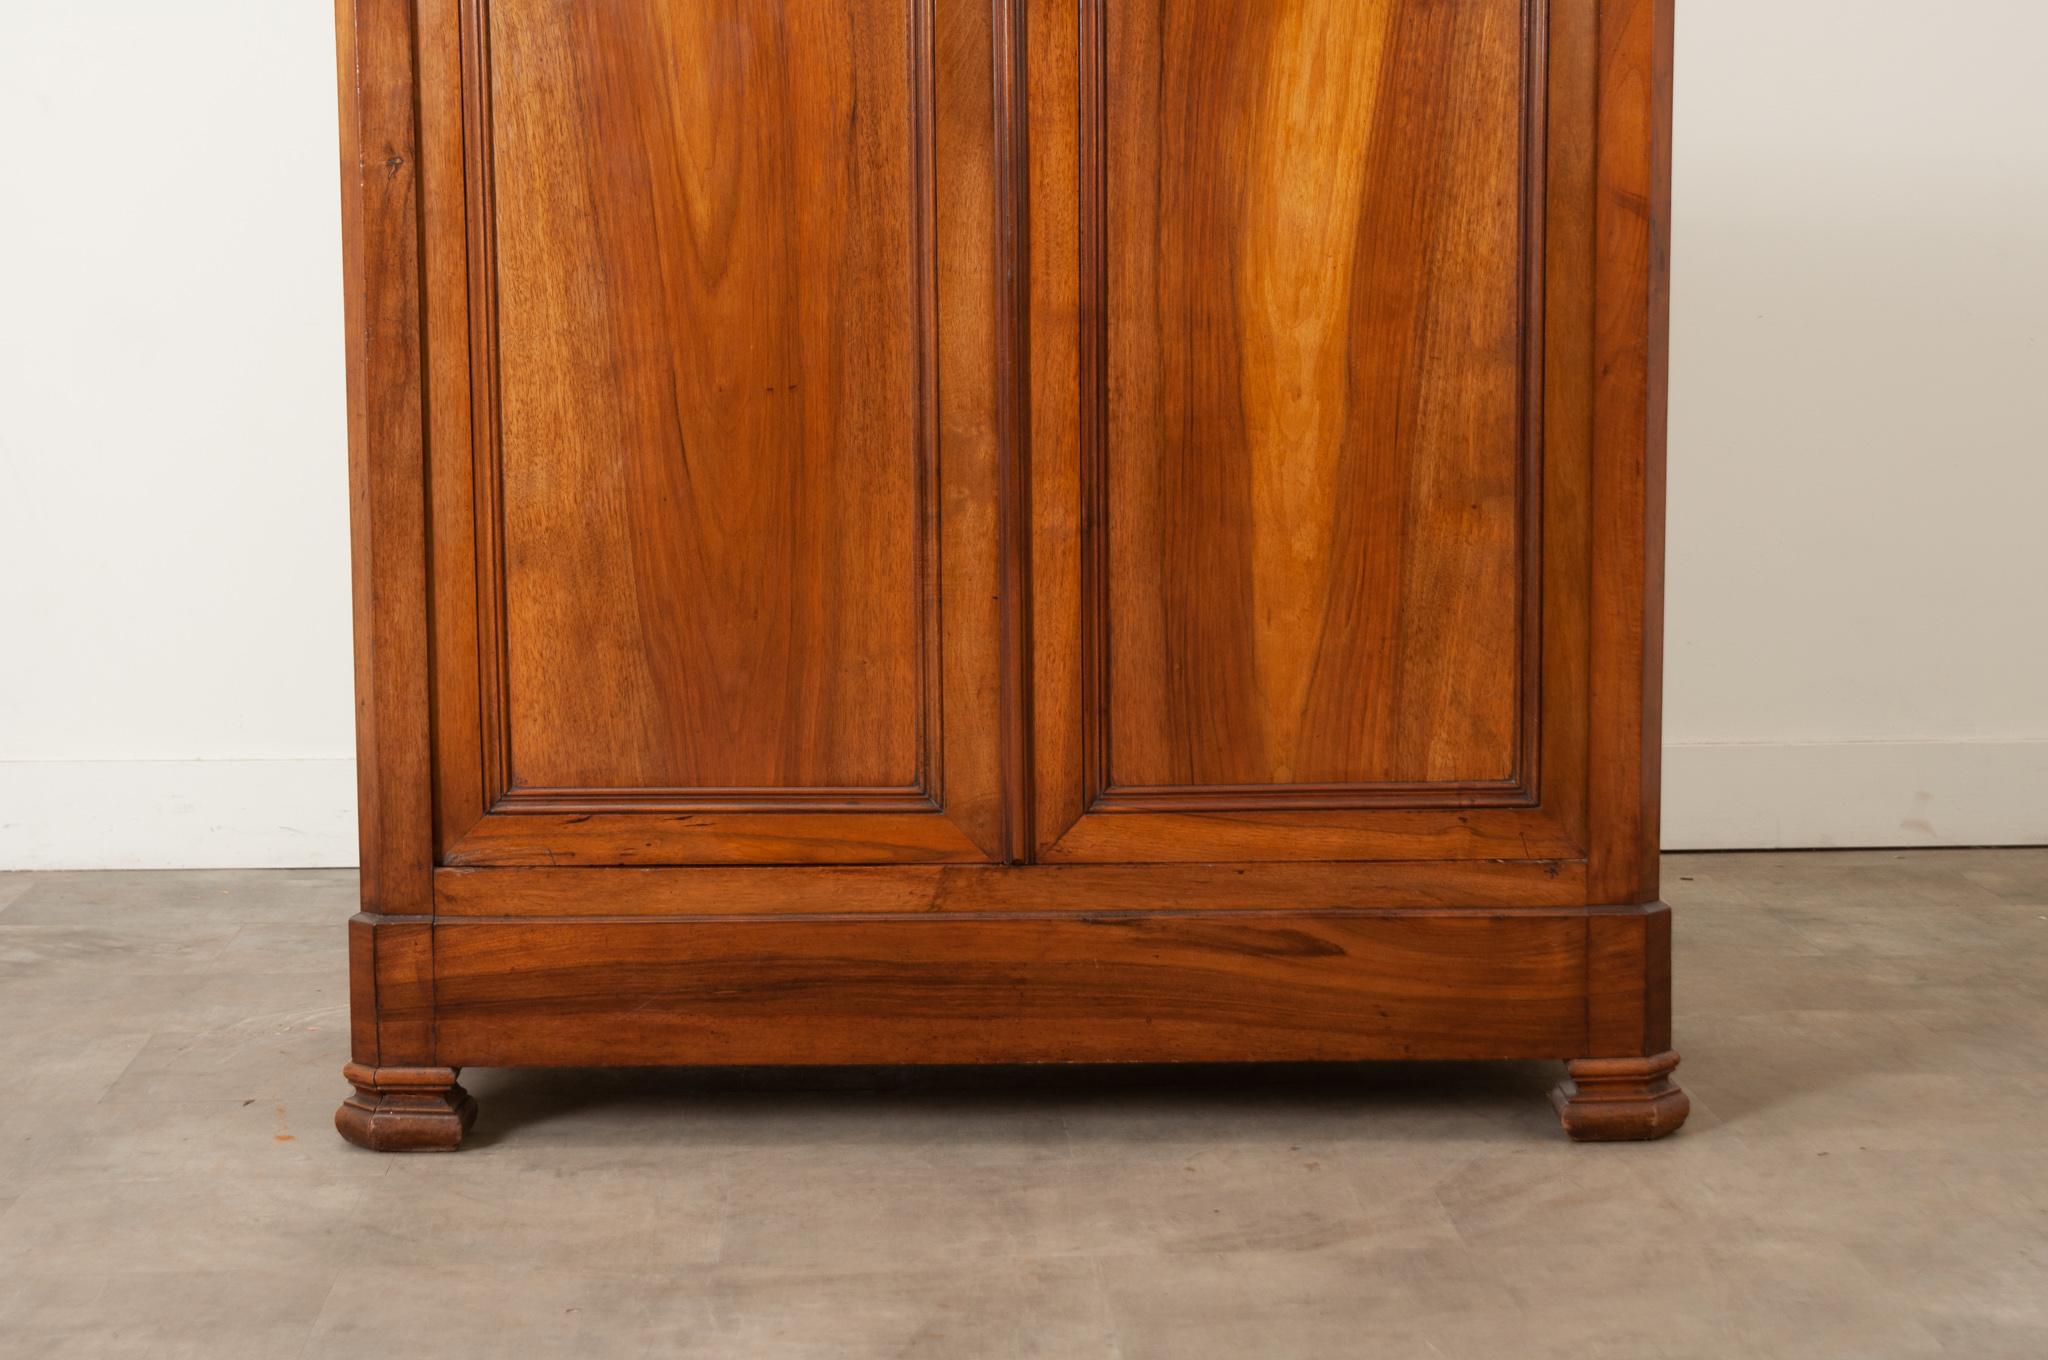 Ein schöner Nussbaumschrank aus dem 19. Jahrhundert, hergestellt in Frankreich im Louis-Philippe-Stil. Die großen, getäfelten Türen mit verdeckten Scharnieren sind an die Bücher angepasst. Das Zentralschloss ist funktionsfähig und schließt mit einem